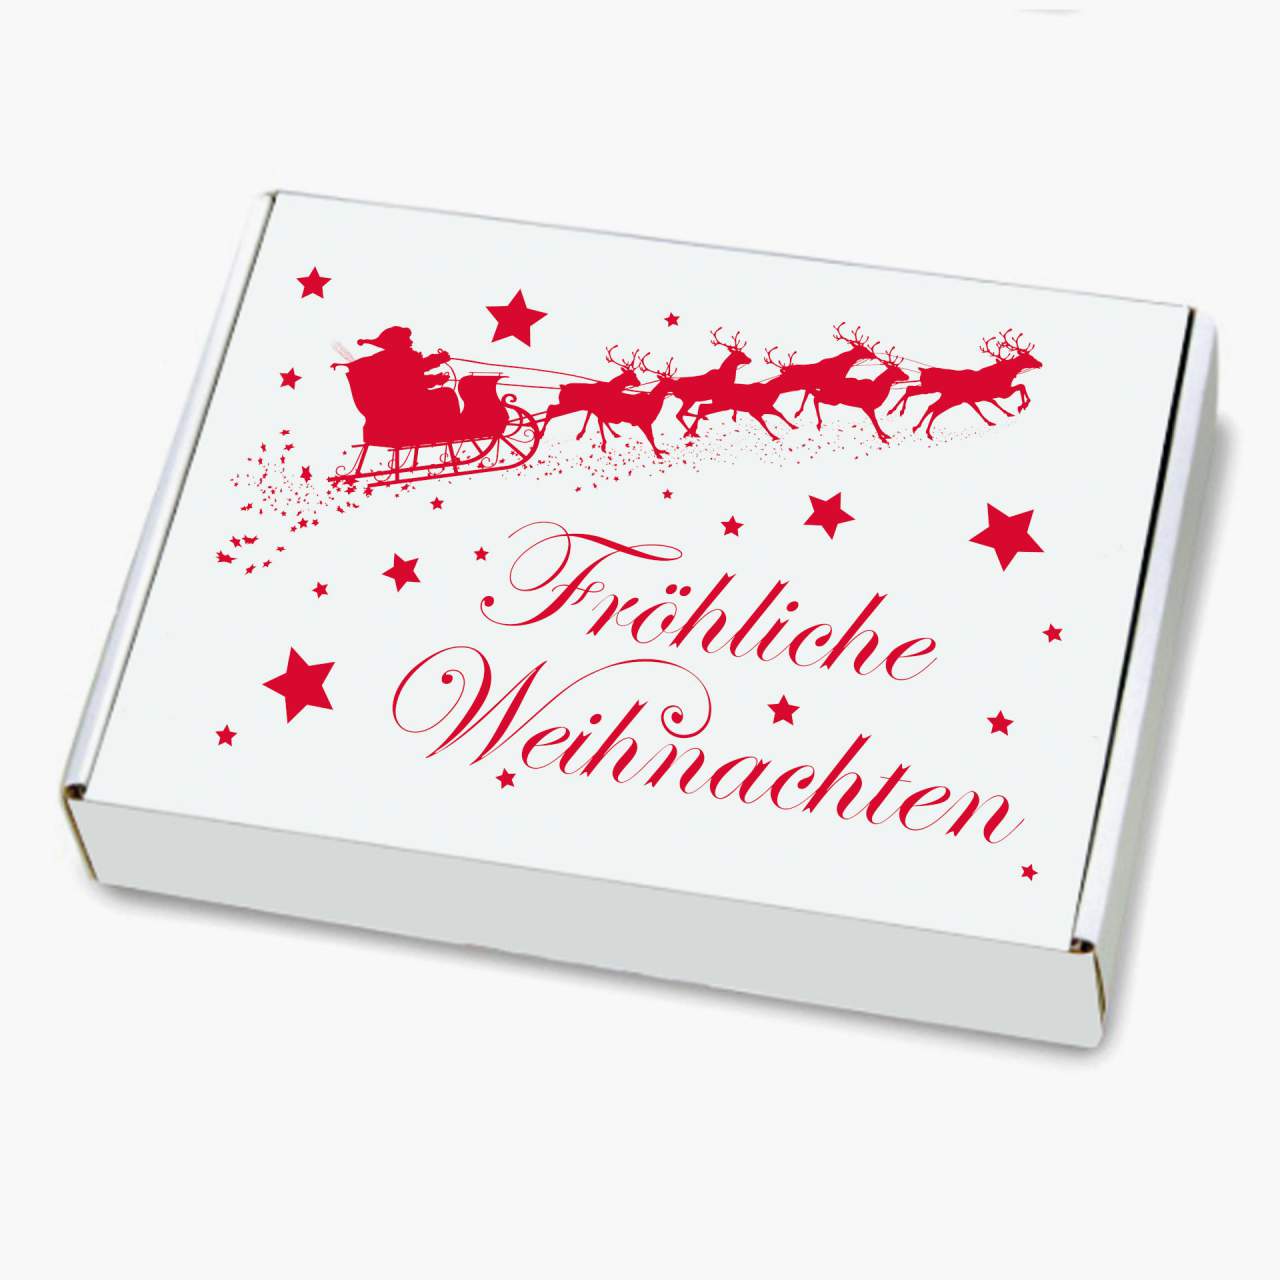 WIHEDÜ Weihnachtskarton - Weihnachtsschlitten (350 x 250 x 50 mm)